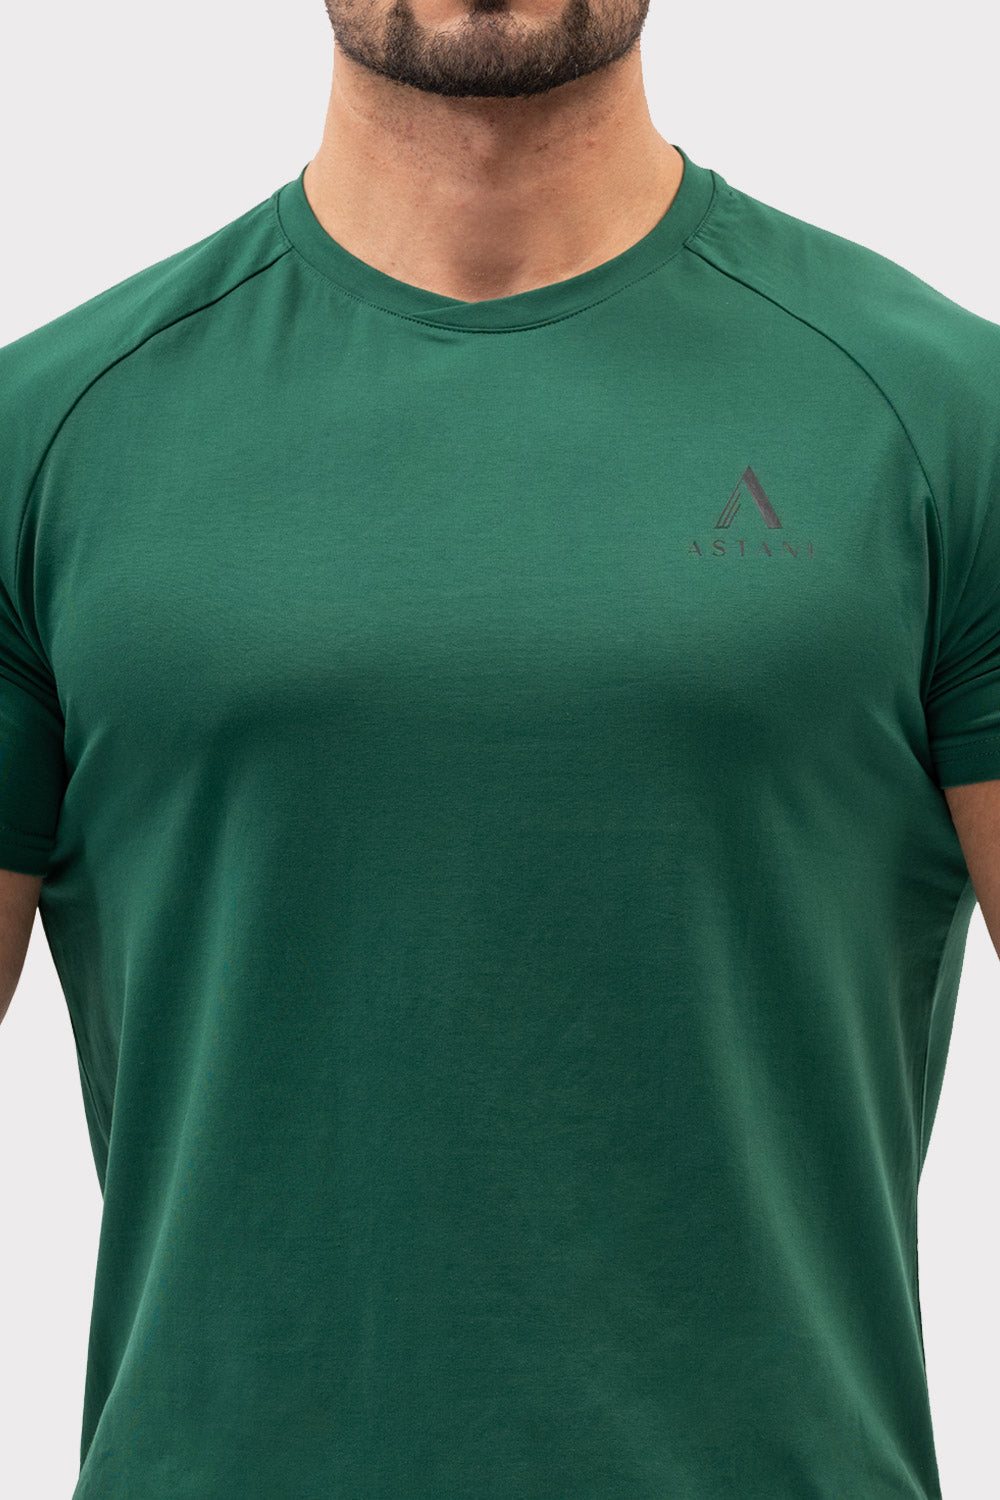 A CODE T-Shirt - Verde Oscuro